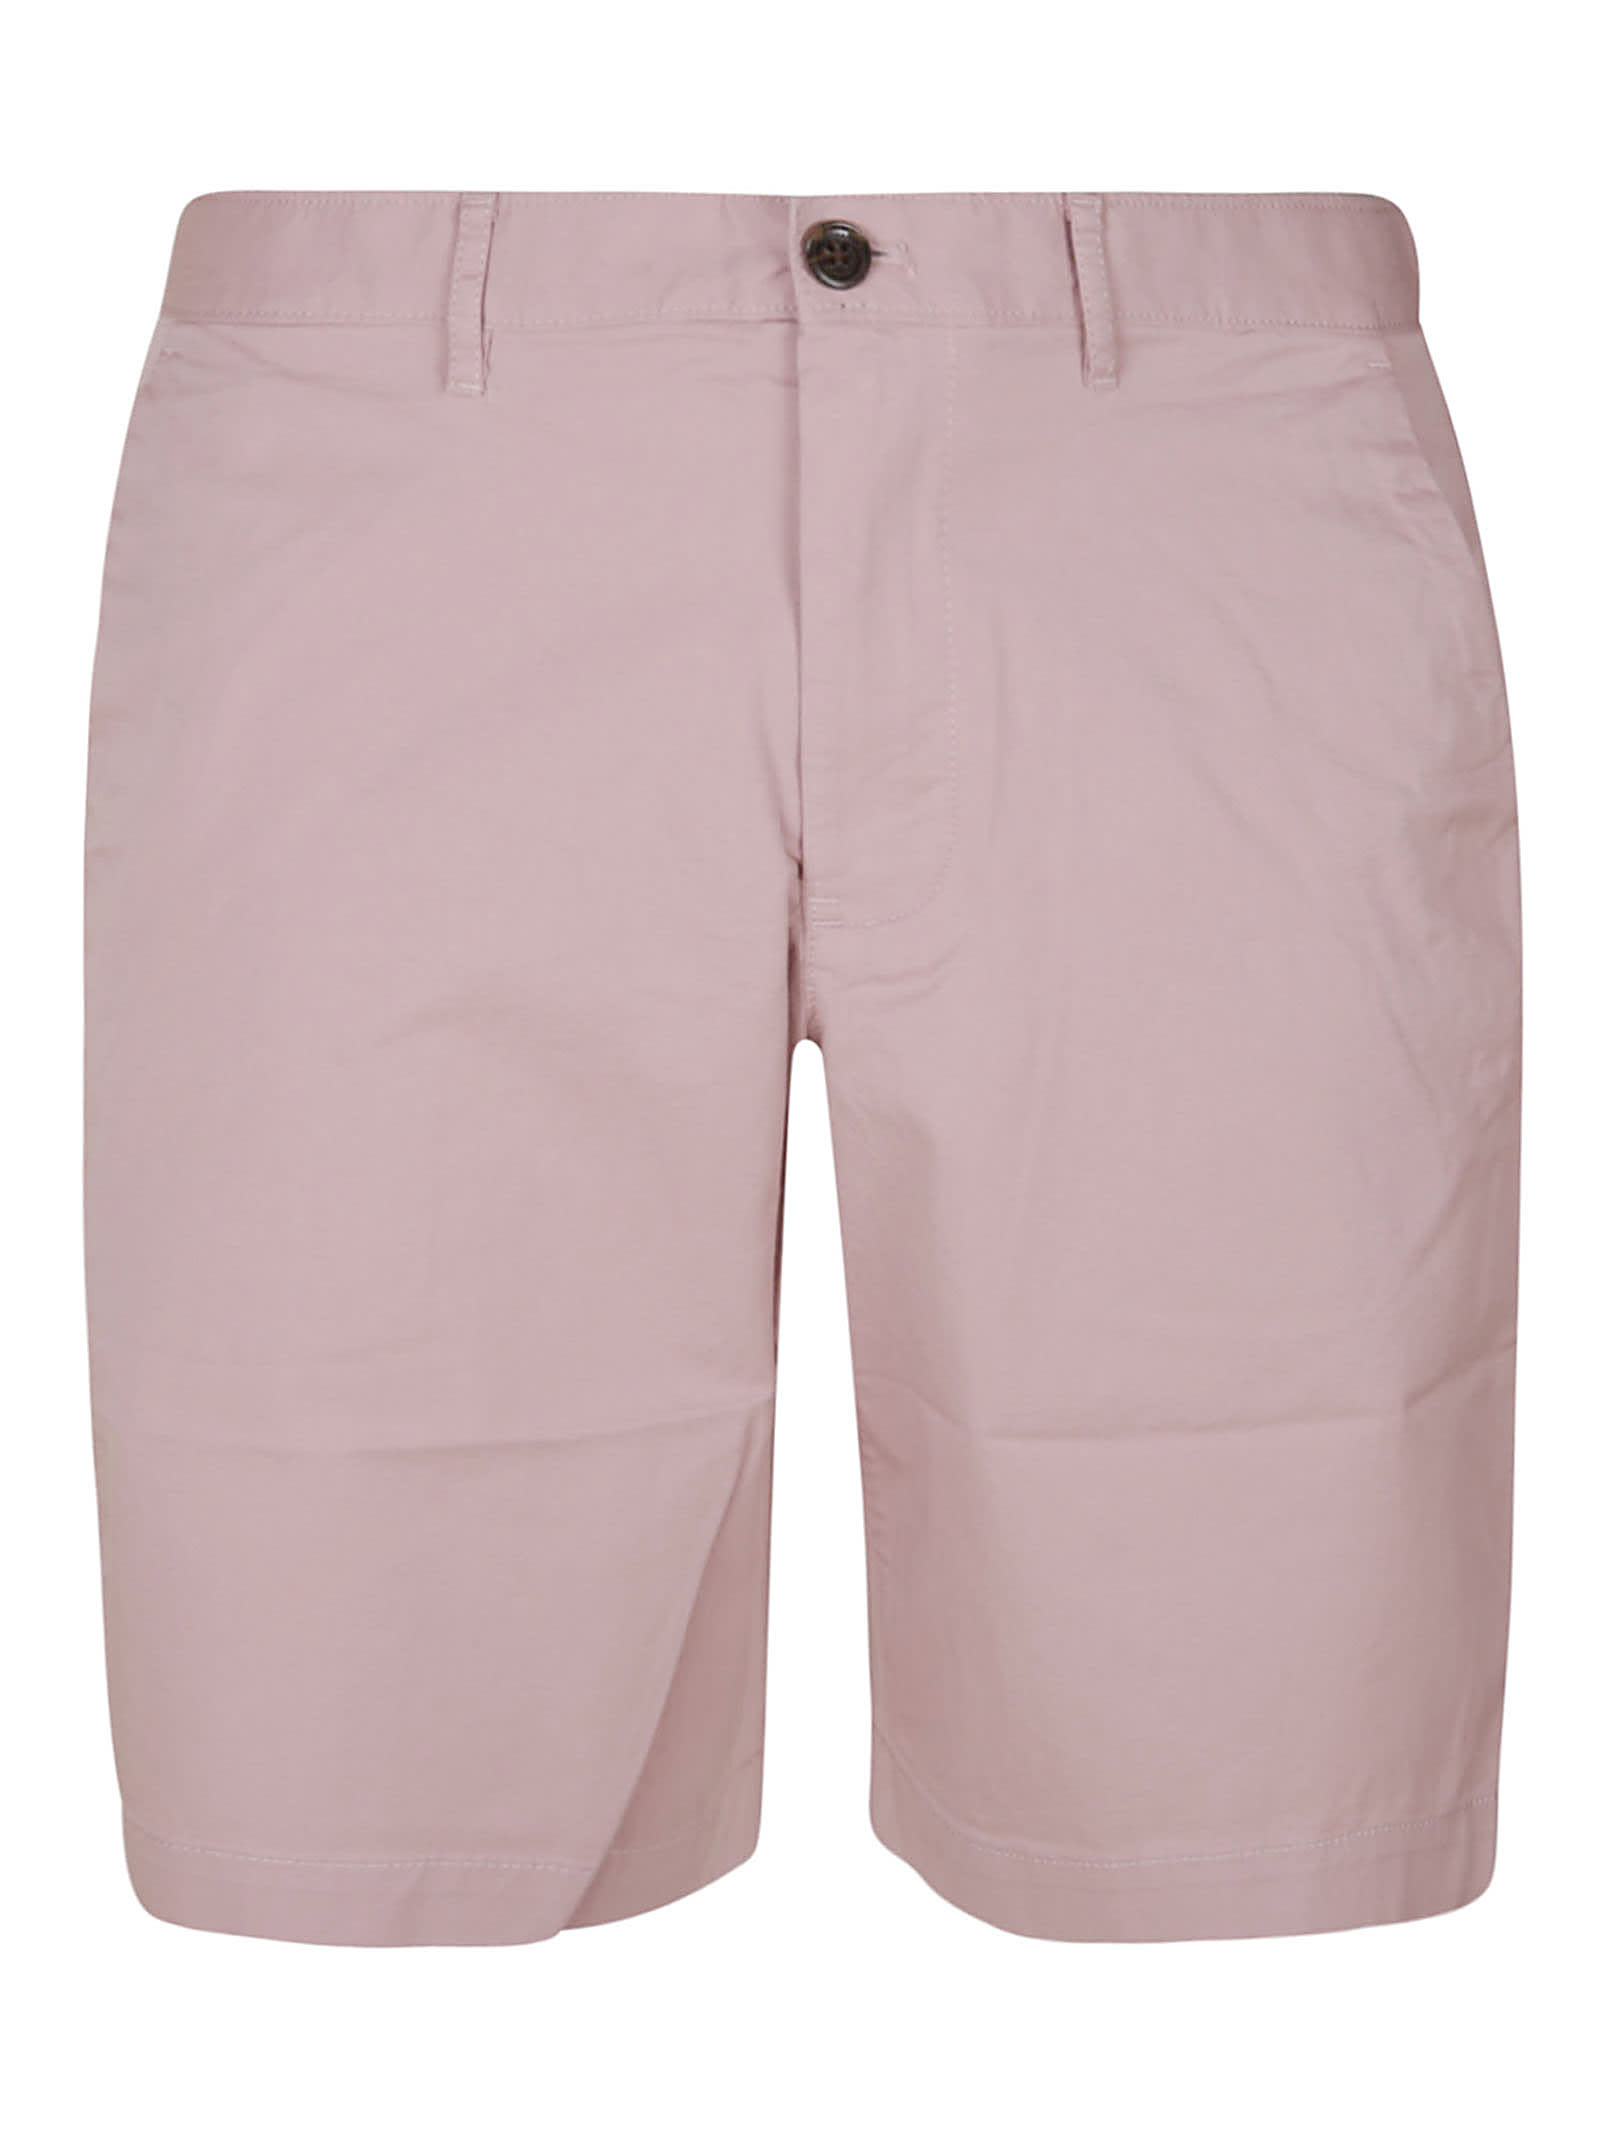 Michael Kors Classic Plain Trouser Shorts